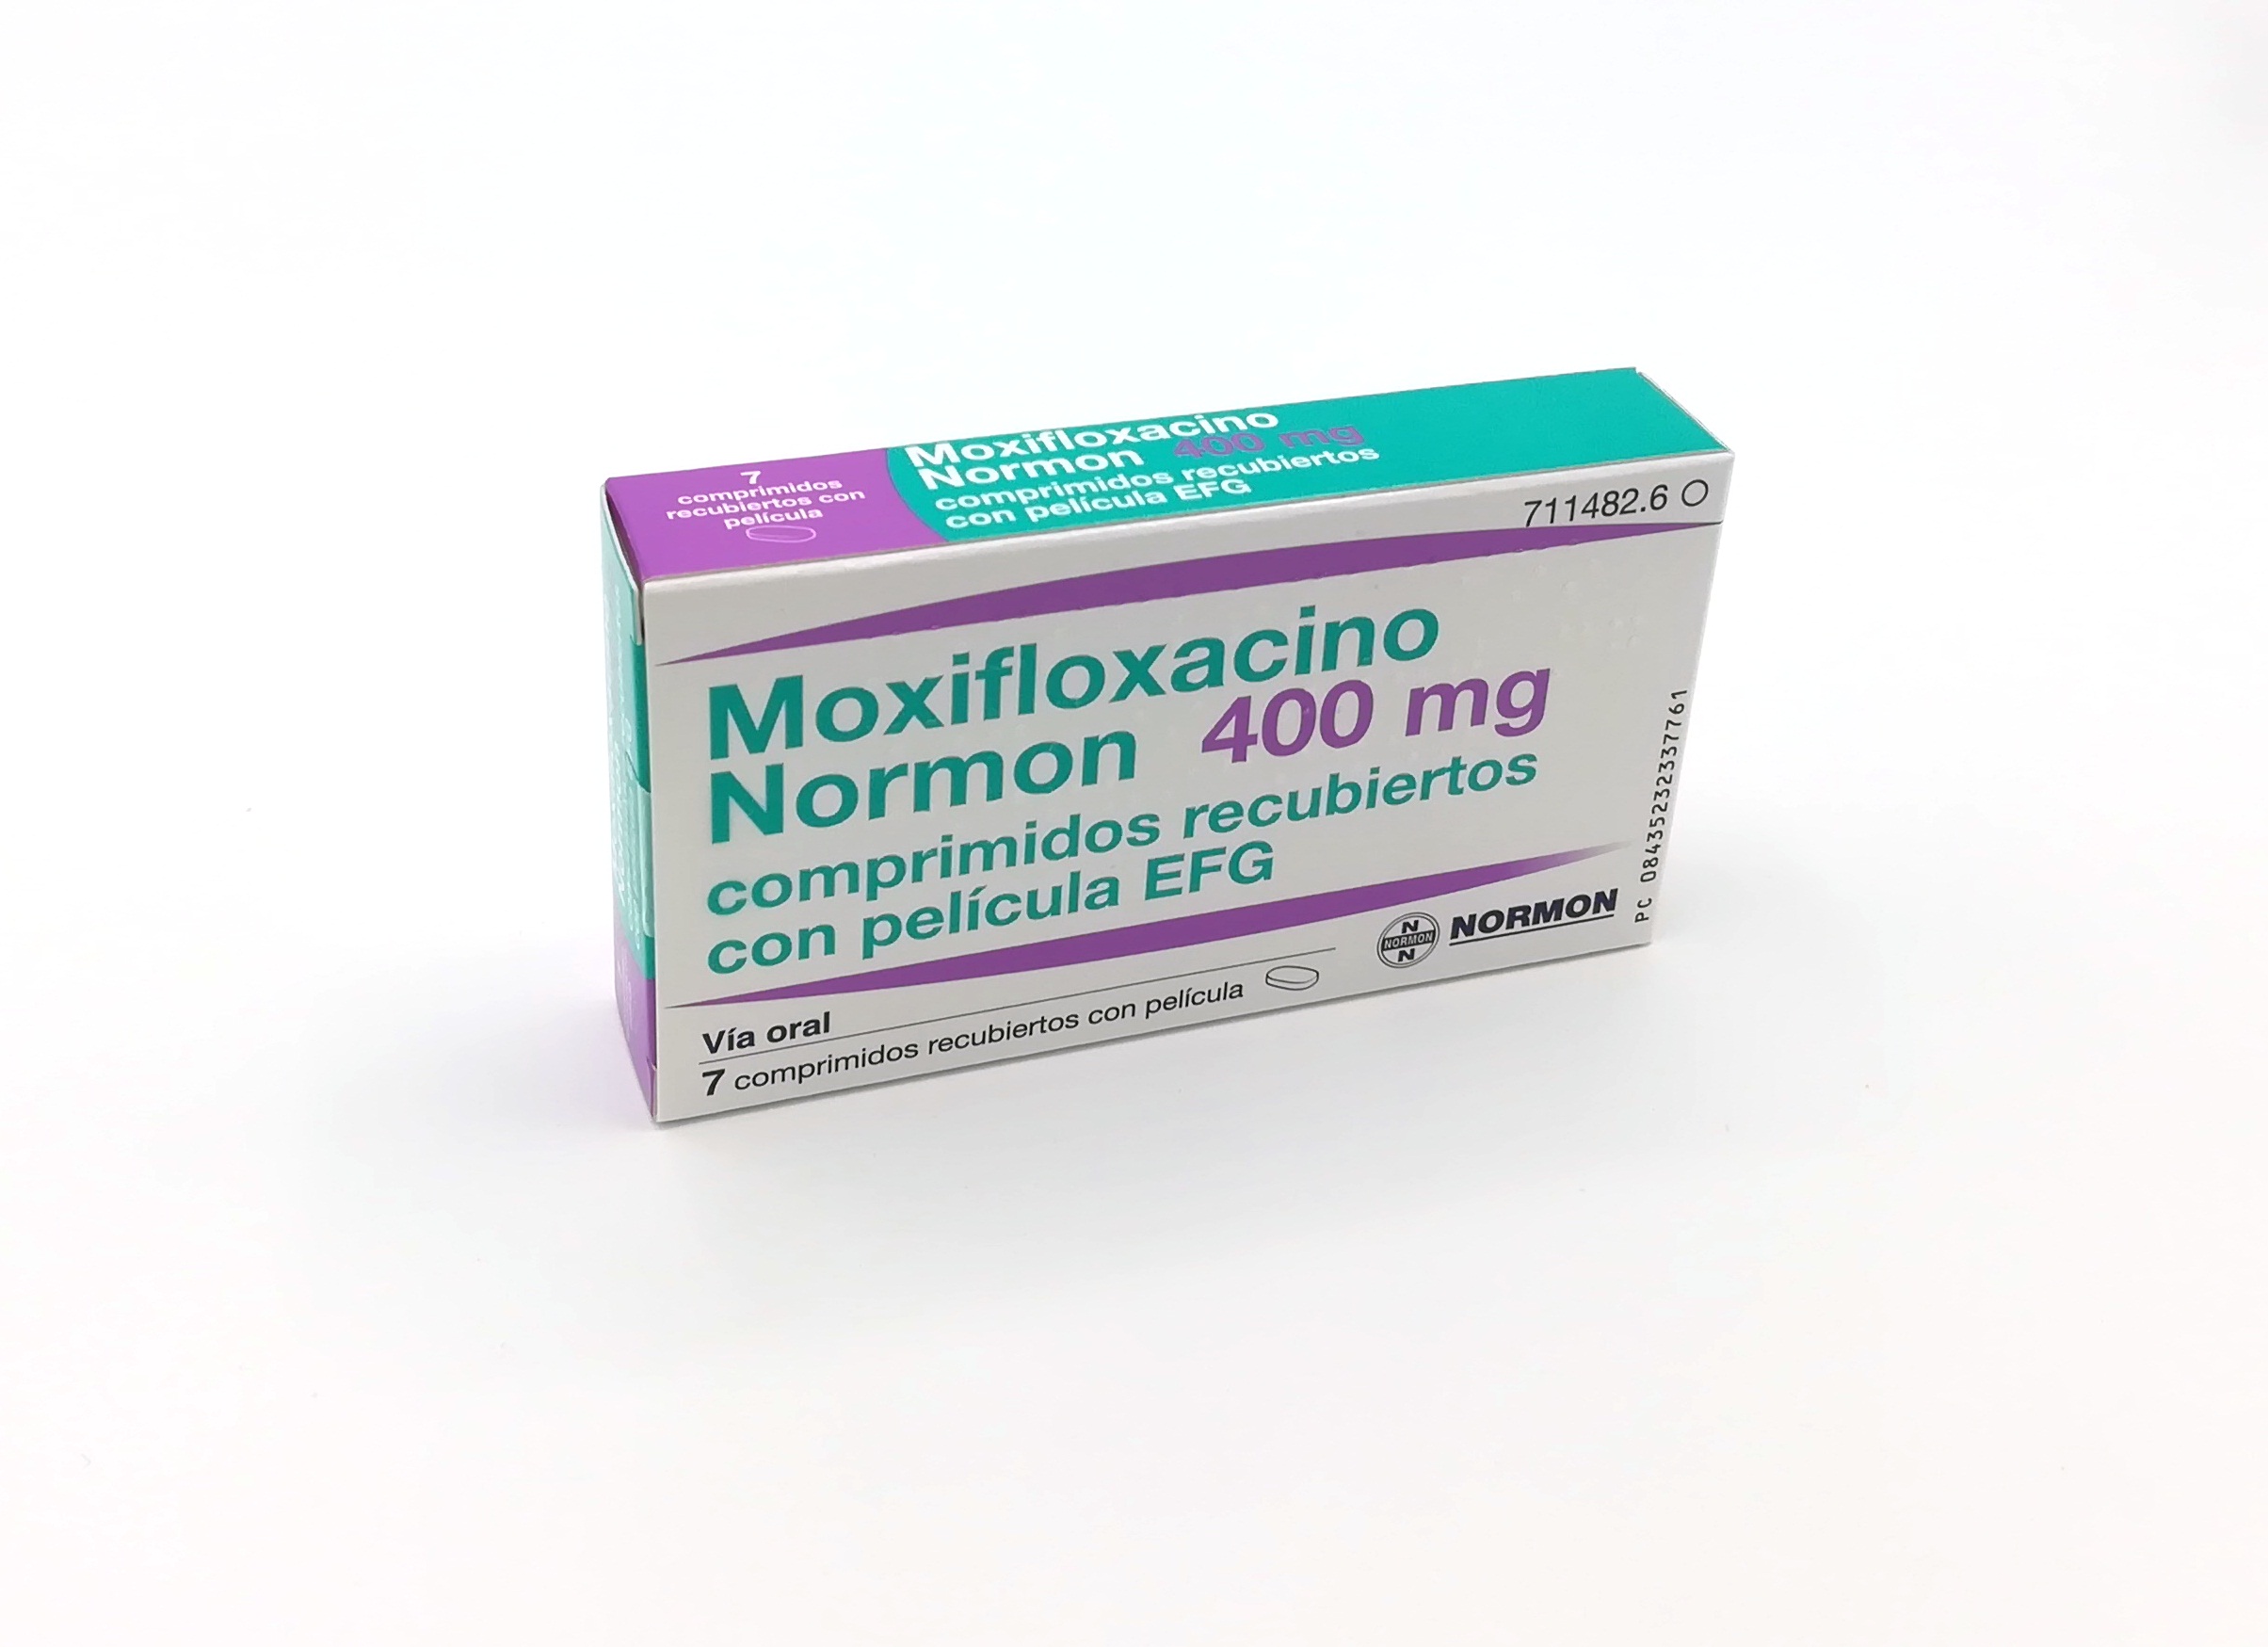 MOXIFLOXACINO NORMON EFG 400 mg 7 COMPRIMIDOS RECUBIERTOS